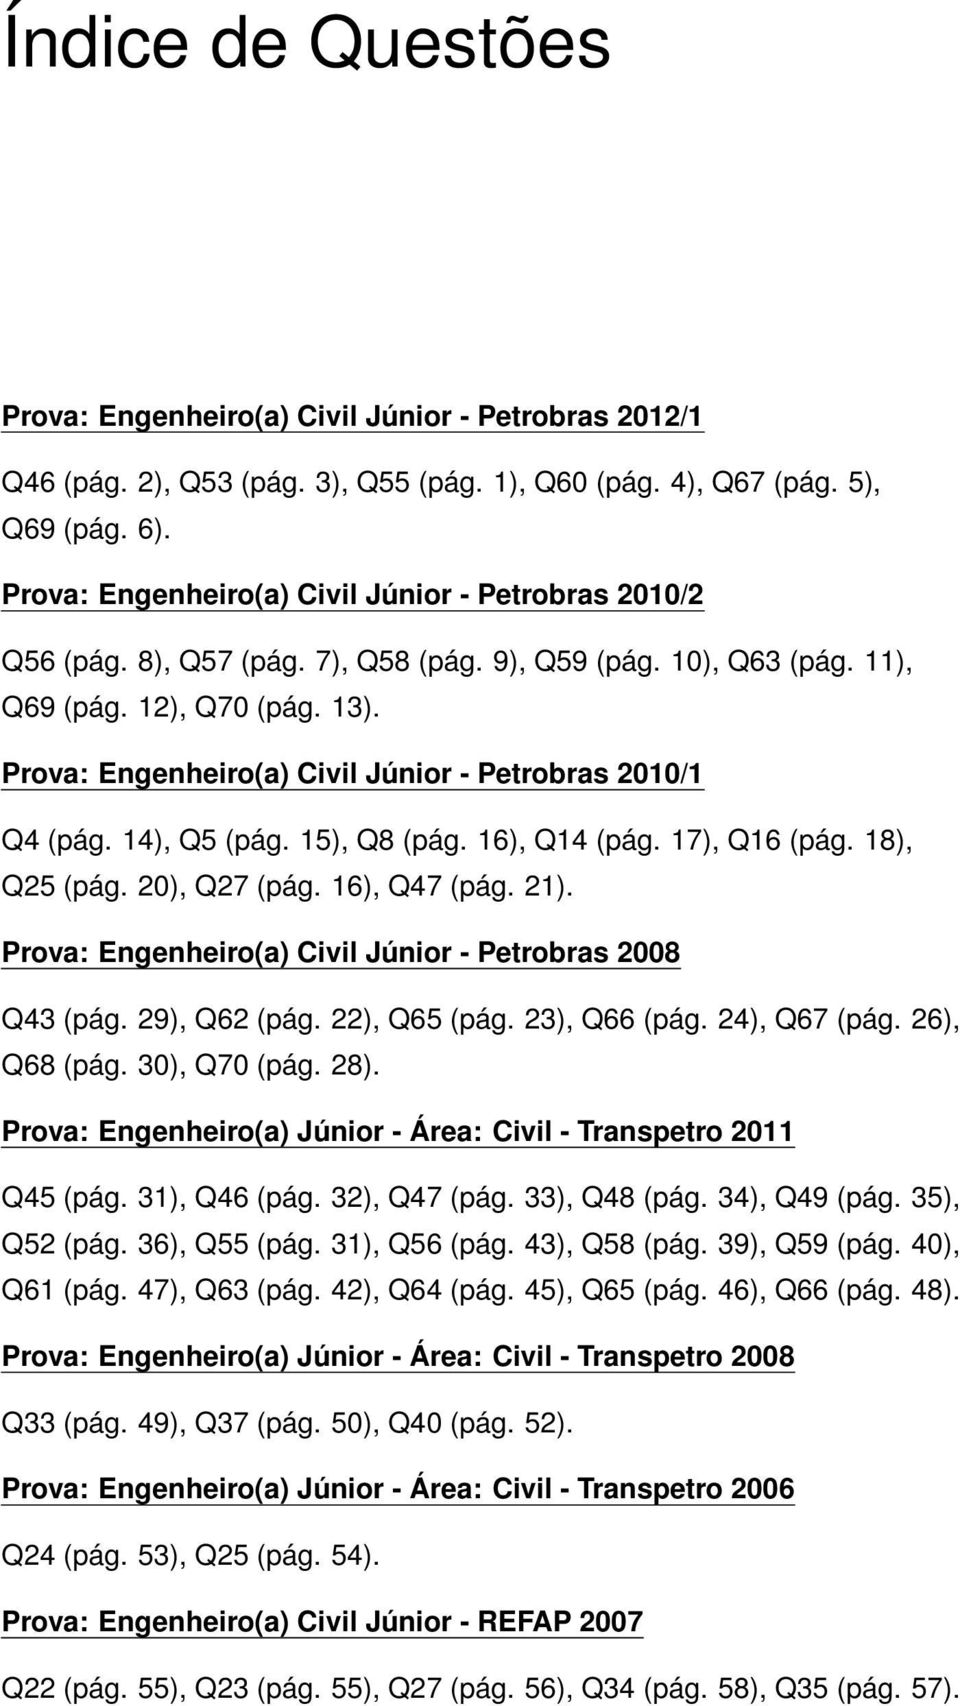 Prova: Engenheiro(a) Civil Júnior - Petrobras 2010/1 Q4 (pág. 14), Q5 (pág. 15), Q8 (pág. 16), Q14 (pág. 17), Q16 (pág. 18), Q25 (pág. 20), Q27 (pág. 16), Q47 (pág. 21).